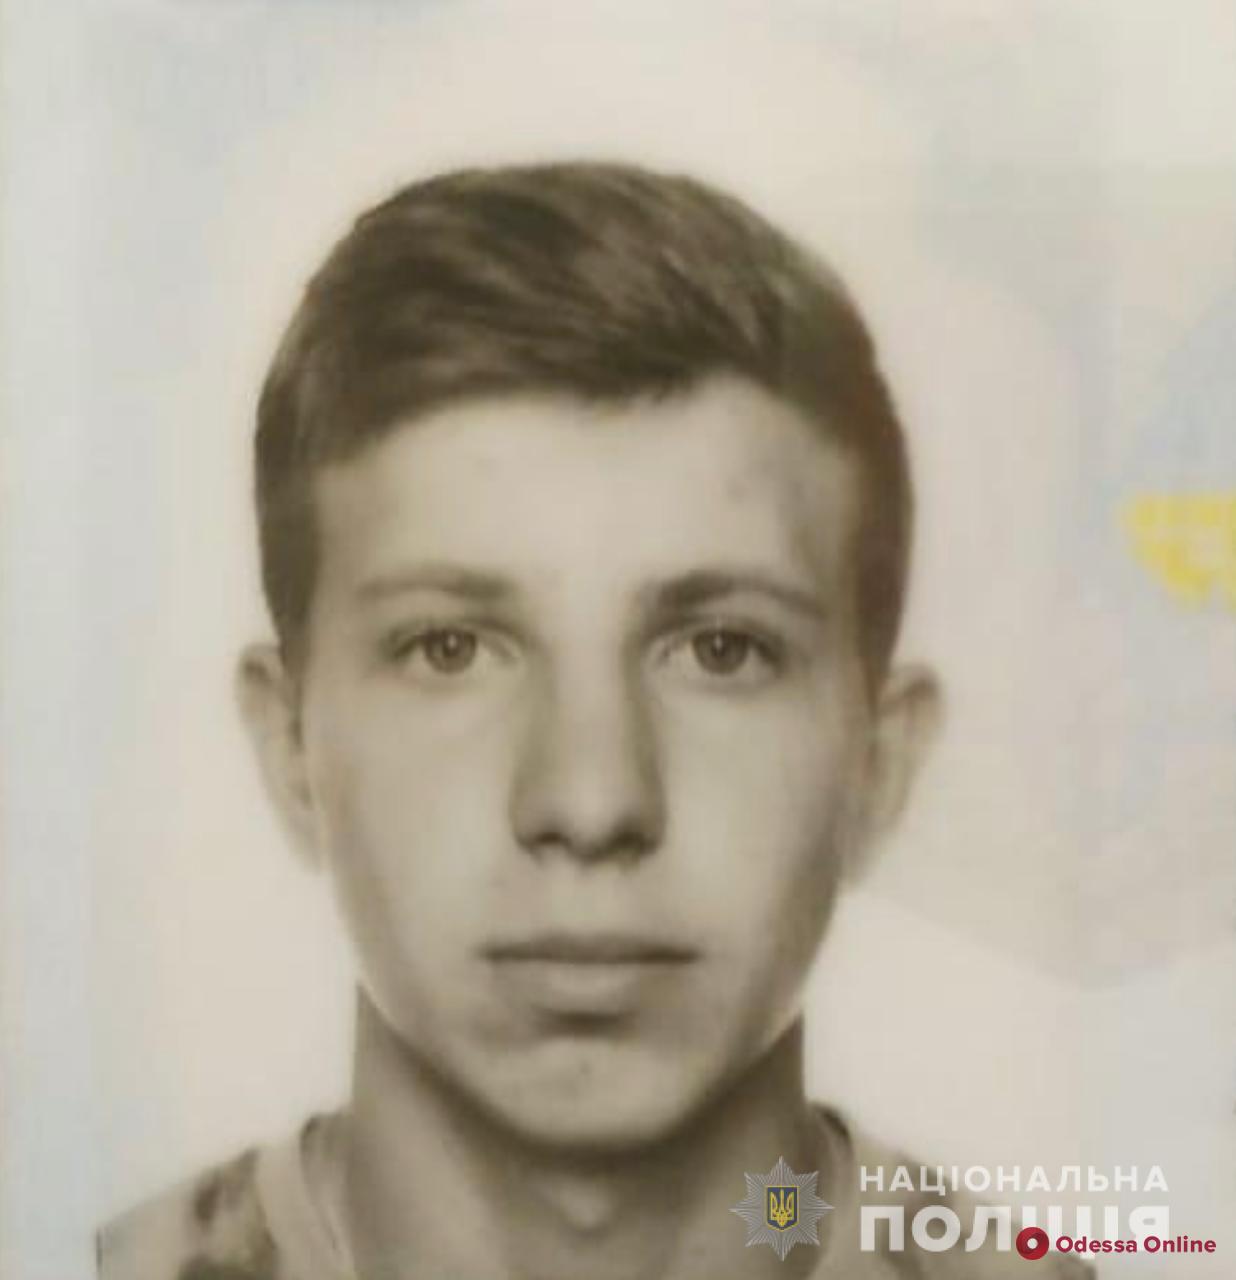 Одесские полицейские просят помощи в поисках 17-летнего парня